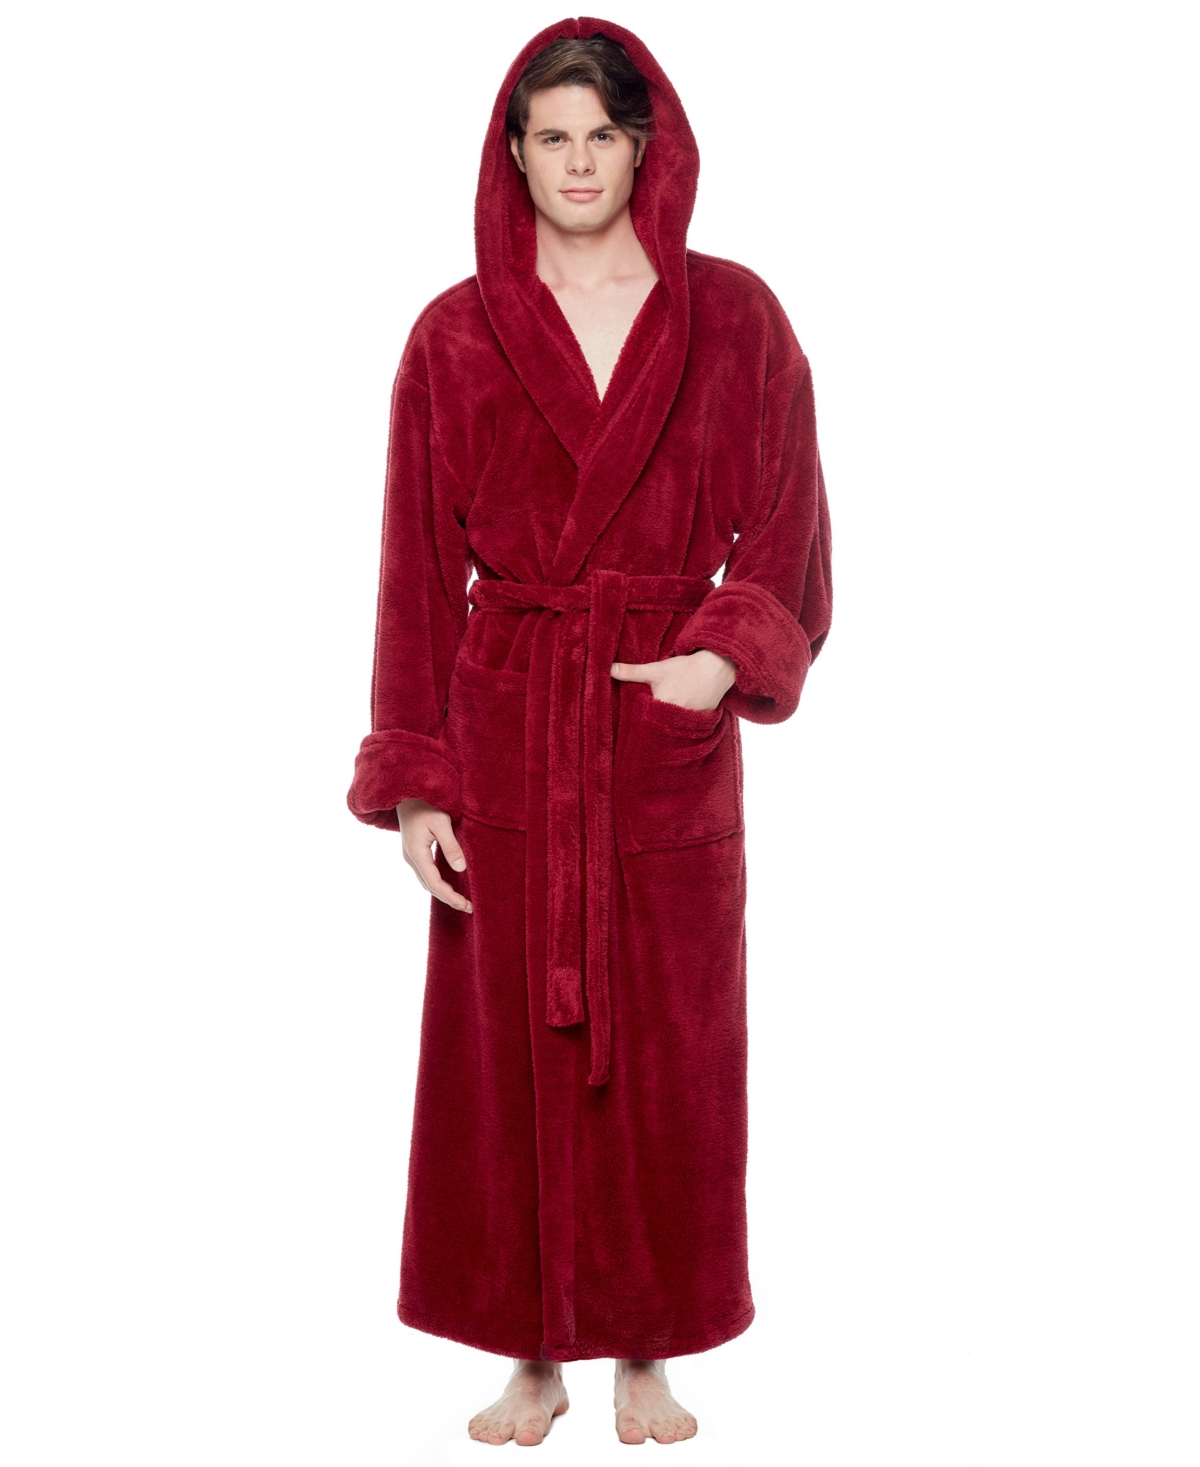 Men's Soft Fleece Robe, Ankle Length Hooded Turkish Bathrobe - Burgundy